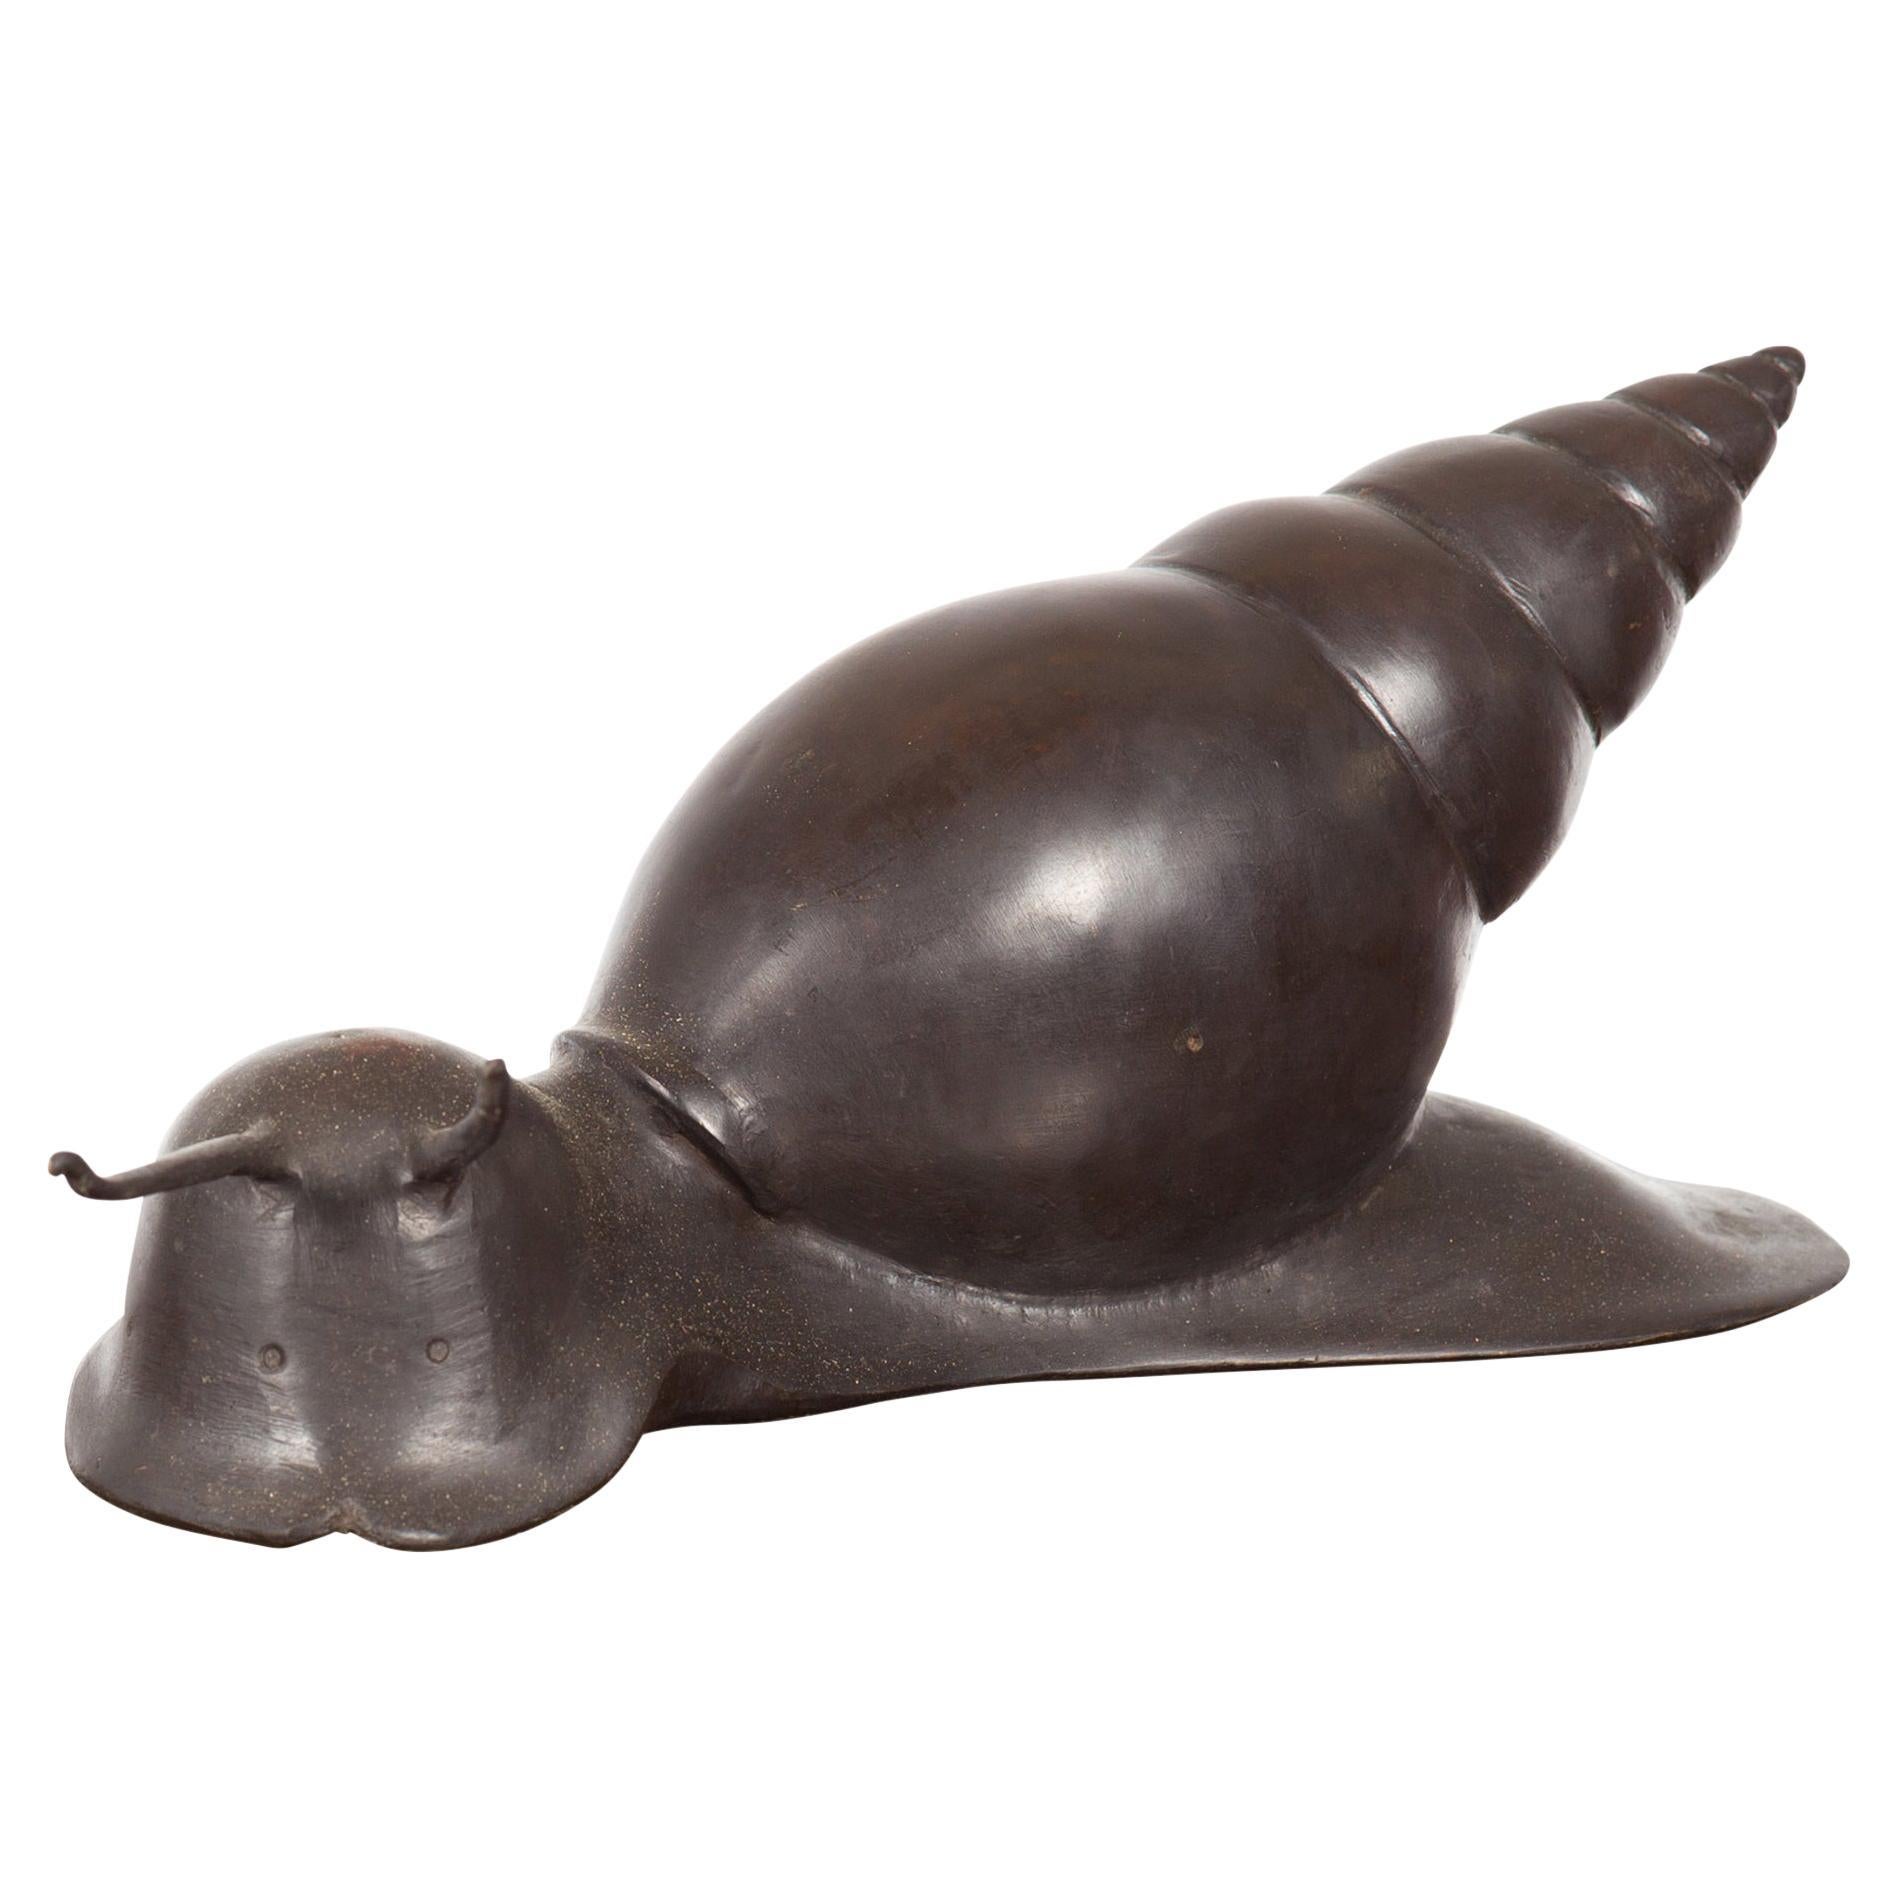 Petite sculpture vintage d'escargot en bronze moulé à la cire perdue avec patine foncée